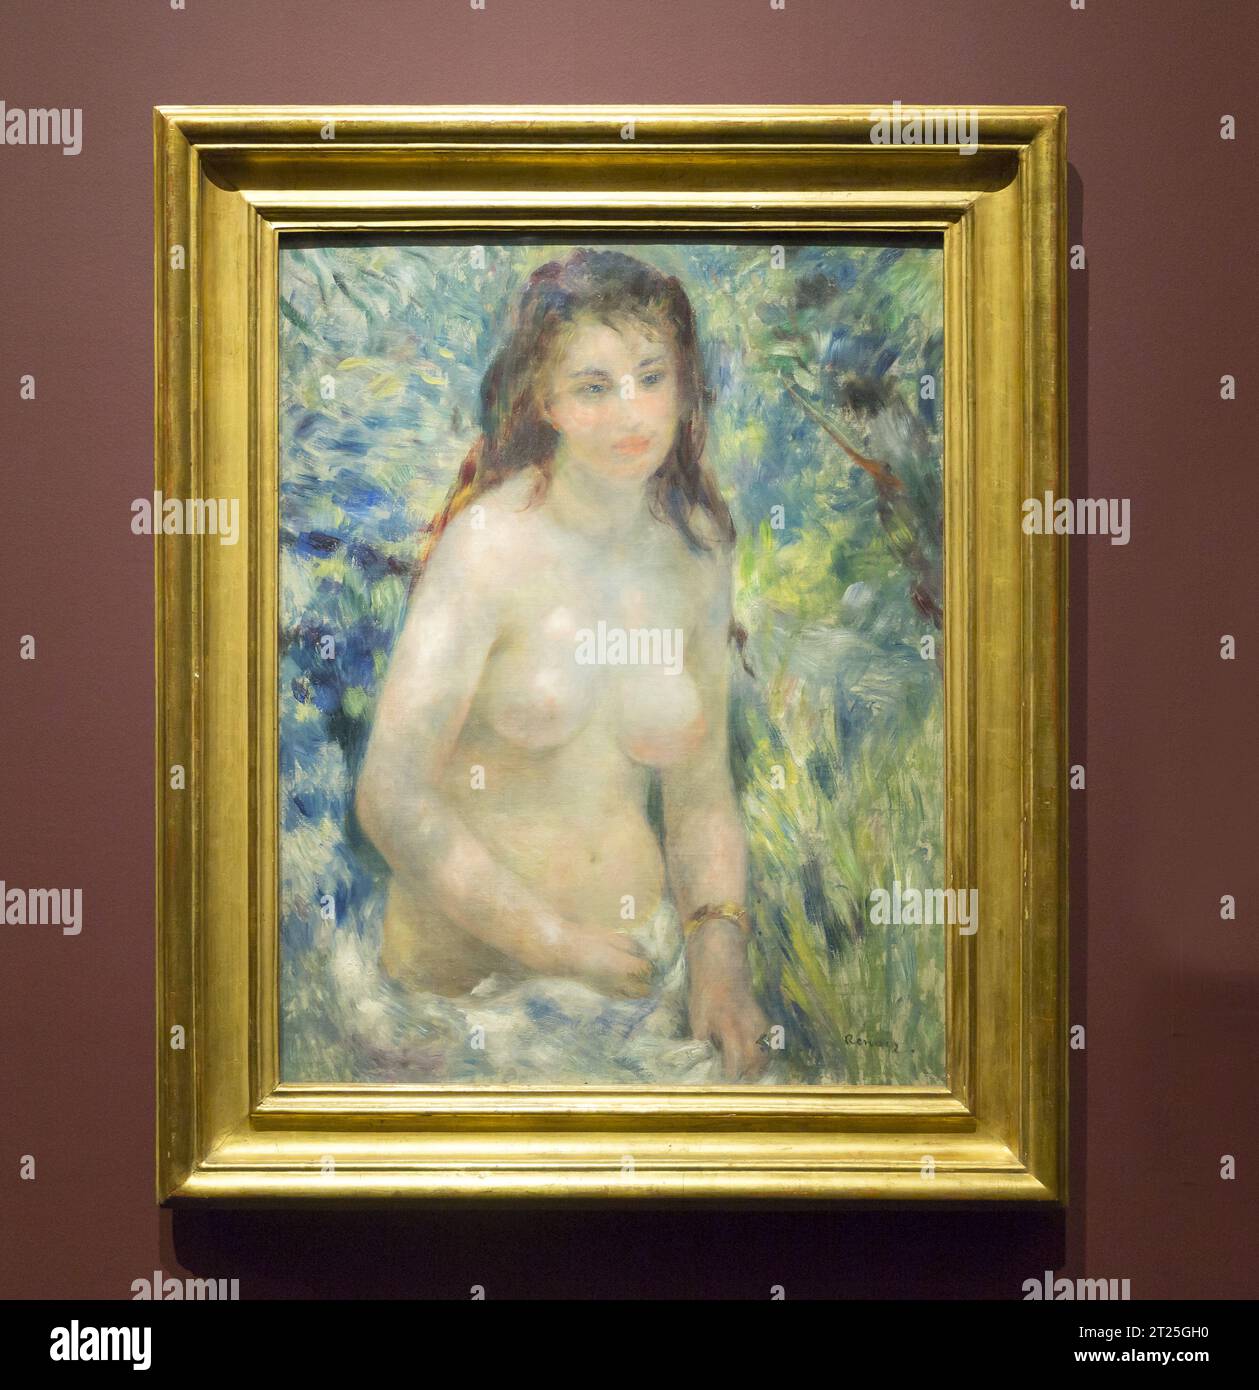 Peinture de l'artiste français Renoir Banque D'Images